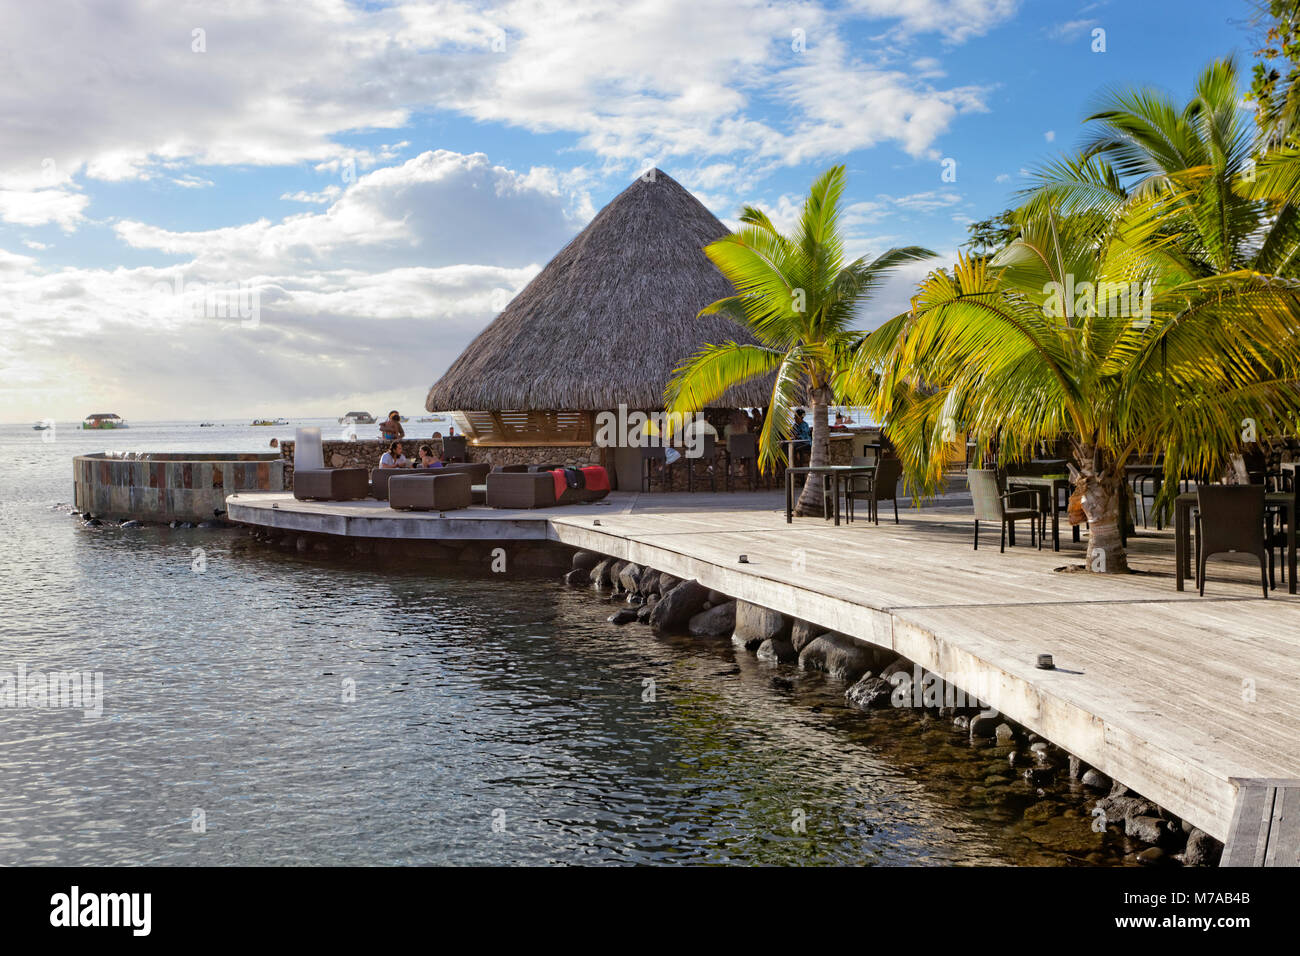 Bar in spiaggia, palme, mare oceano Pacifico, MANAVA SUITE RESORT, Tahiti, Isole della Società, isole Windward, Polinesia Francese Foto Stock